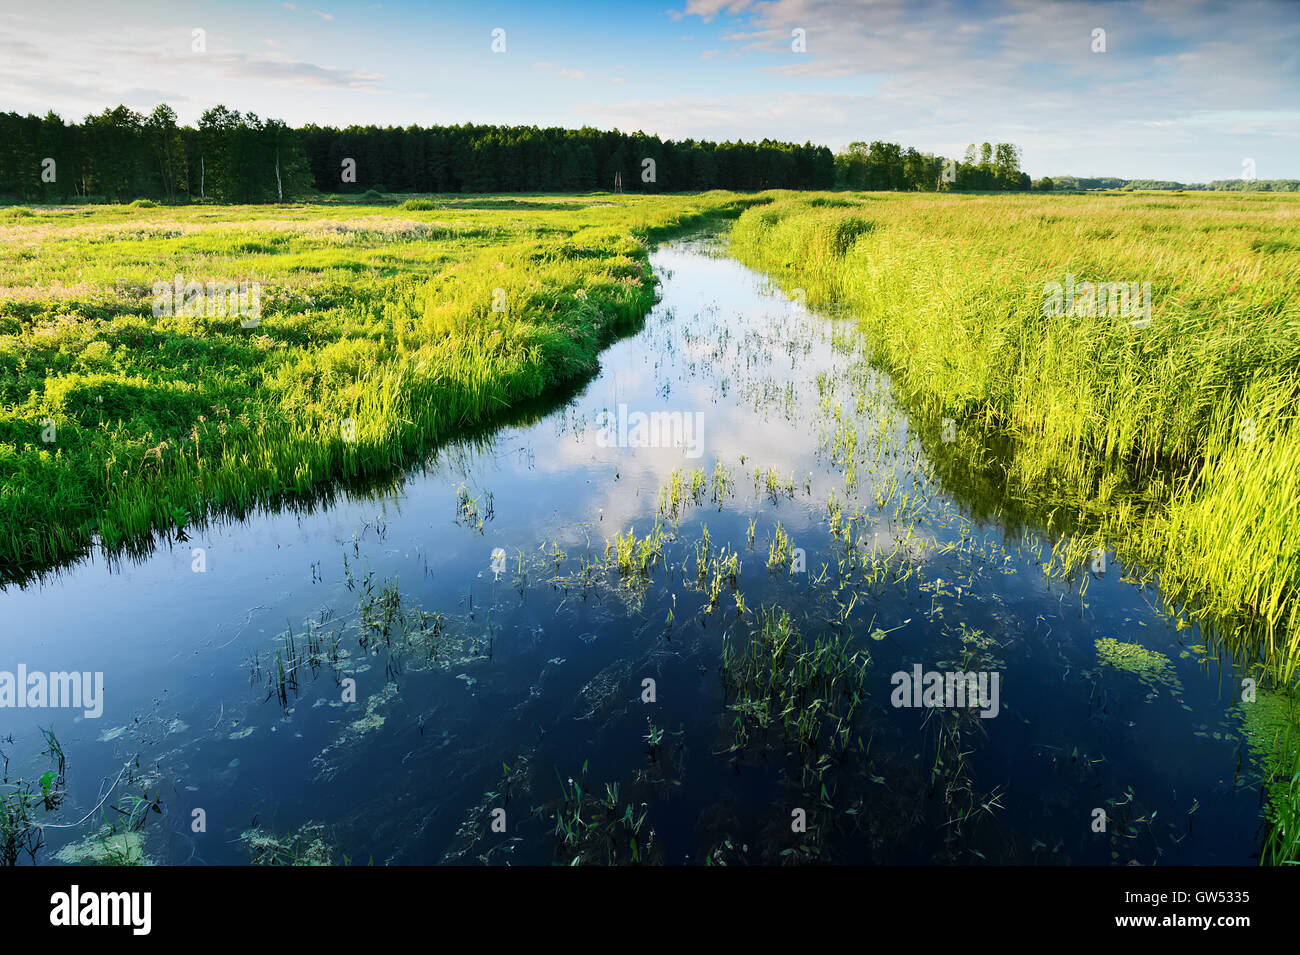 Estate paesaggio con fiume Jegrznia e vegetazione palustre e nelle vicinanze del Biebrza National Park. Regione di Podlaskie, Polonia. Foto Stock